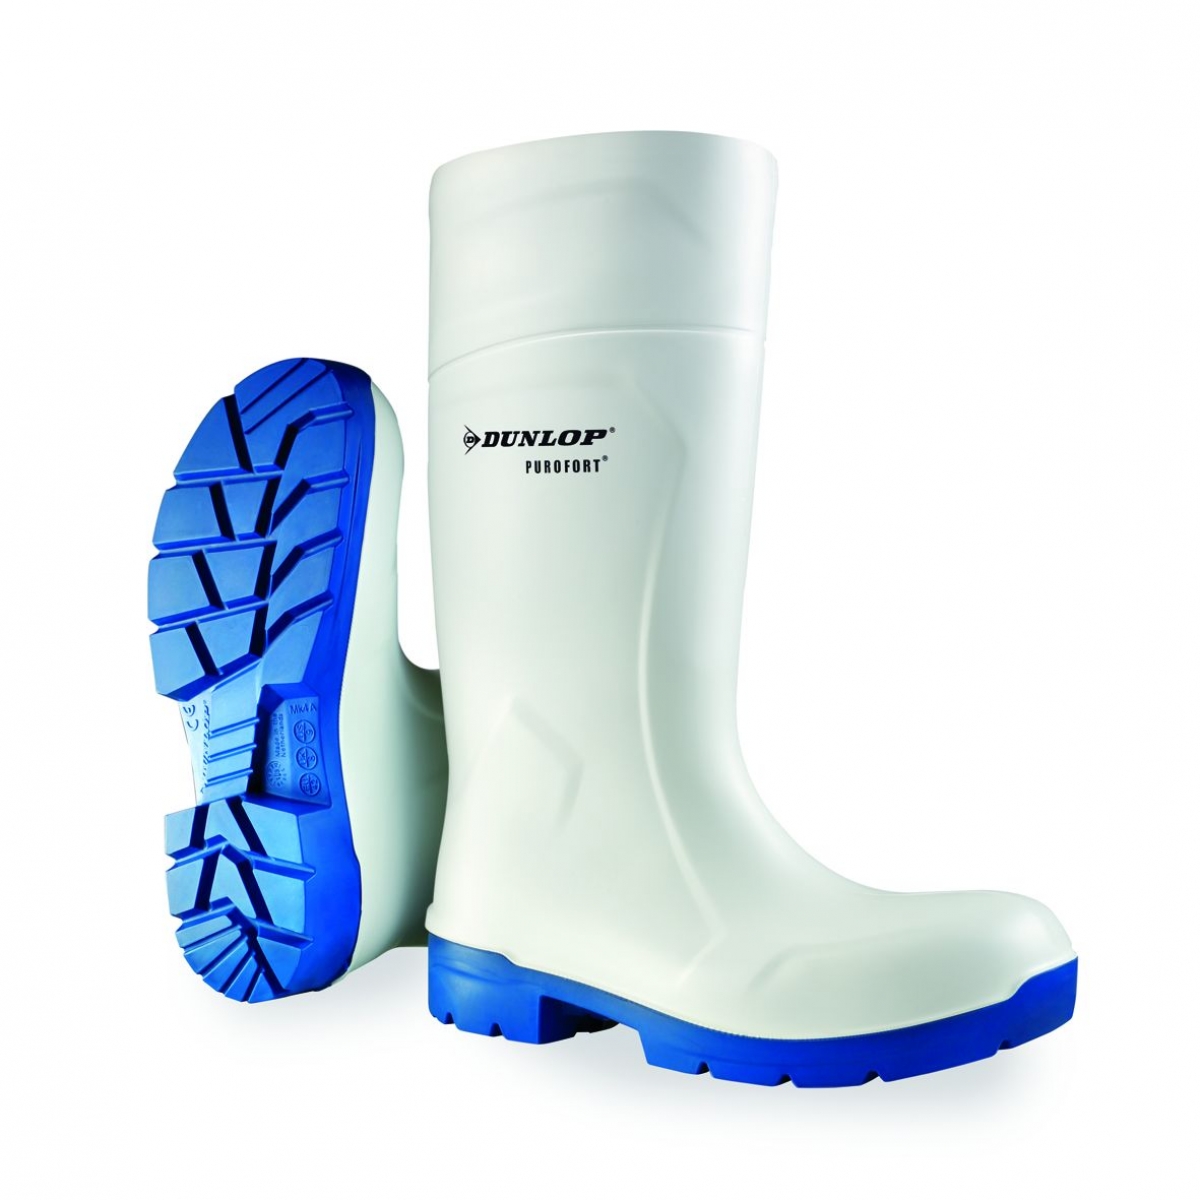 F-DUNLOP-Footwear, S4-Purofort-Sicherheitsstiefel, *NIMWEGEN*, wei/blau